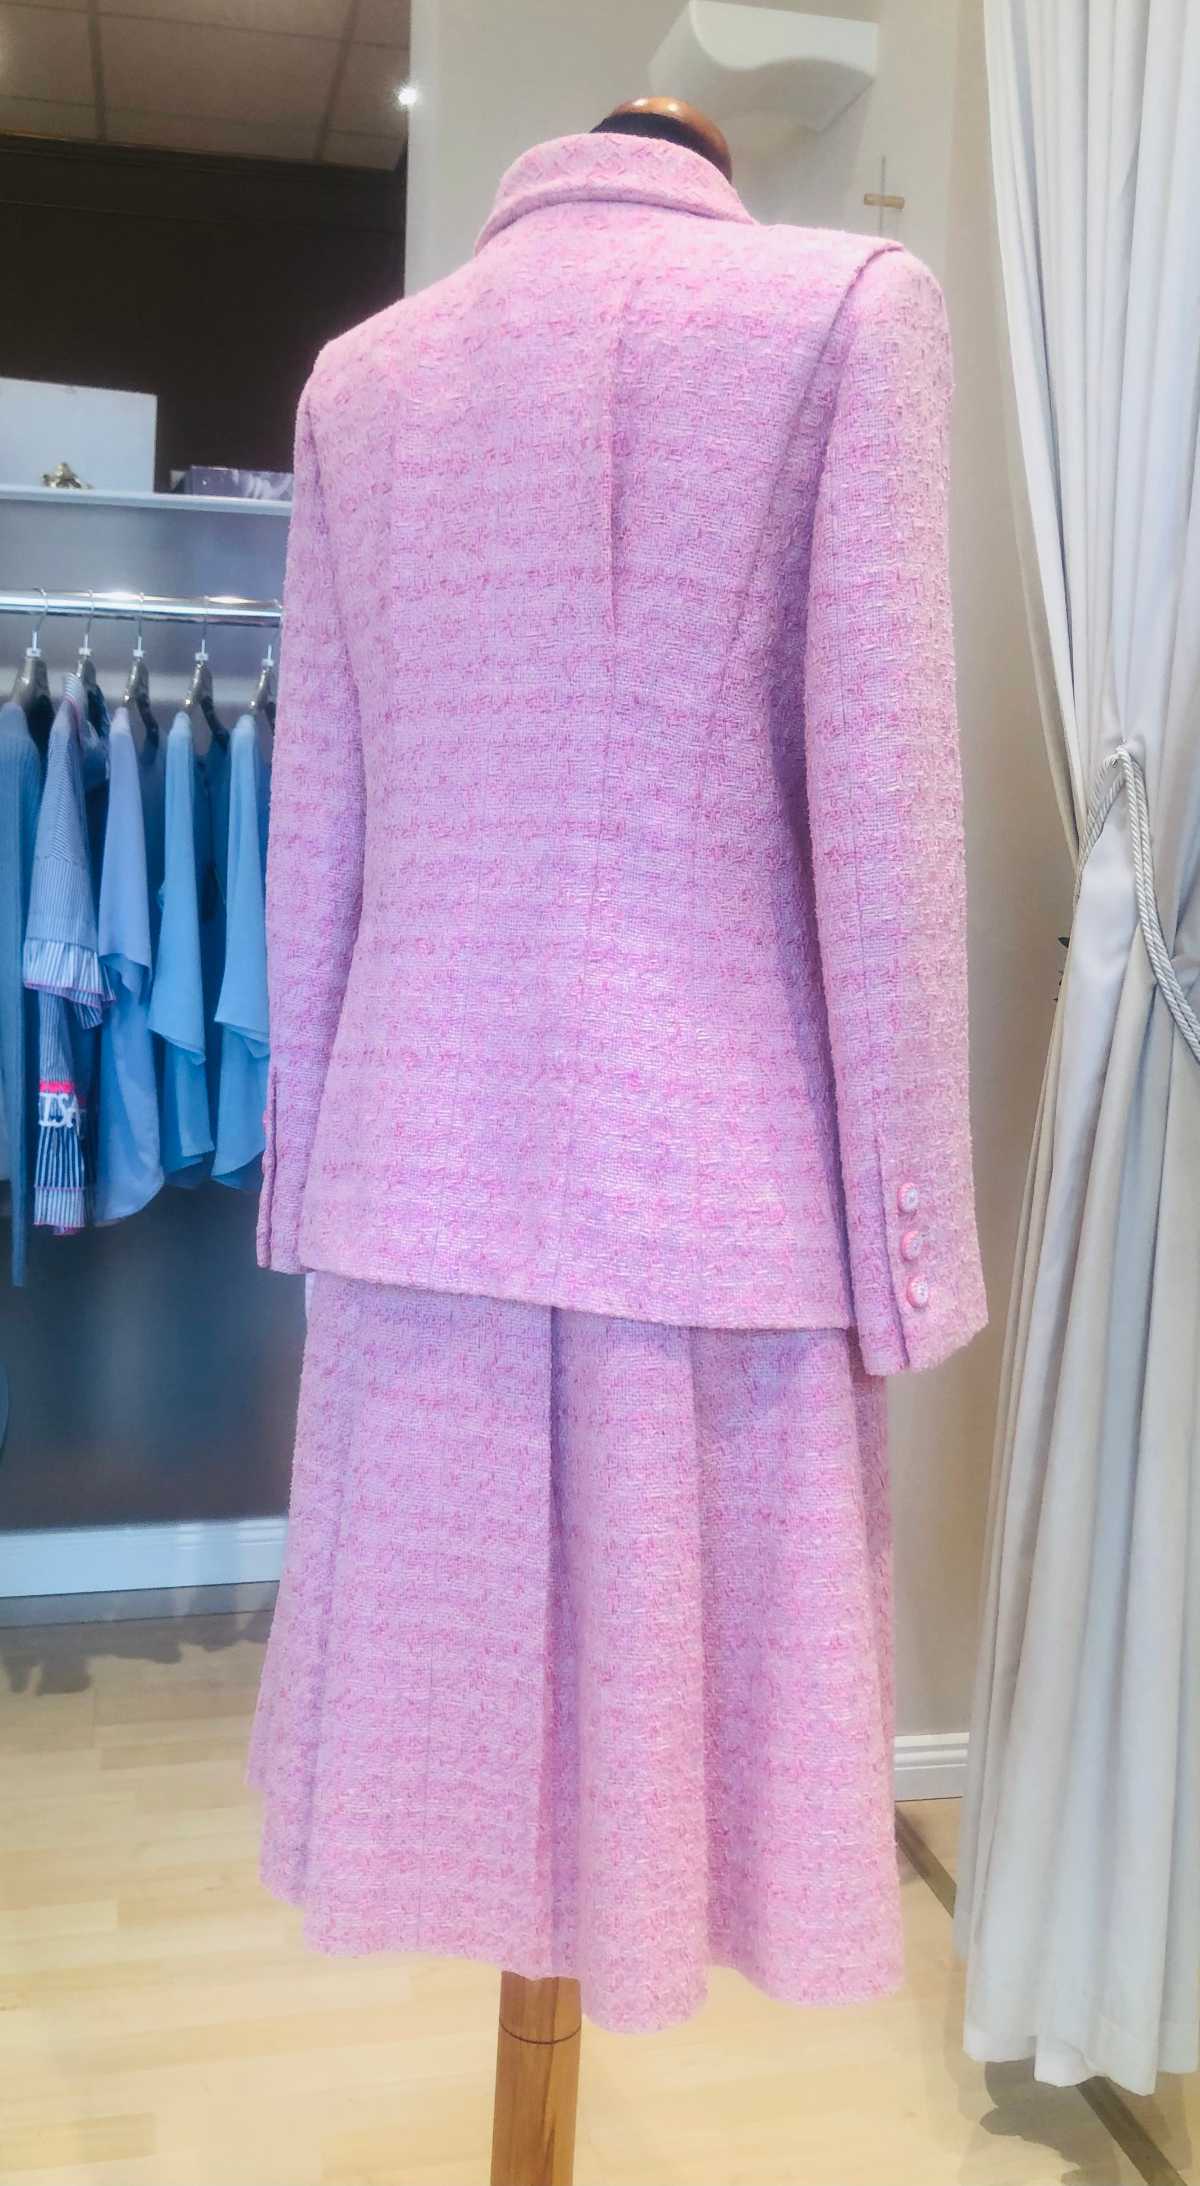 Chanel Kostüm, in rosé, aus Tweed, in Größe 38, von hinten.